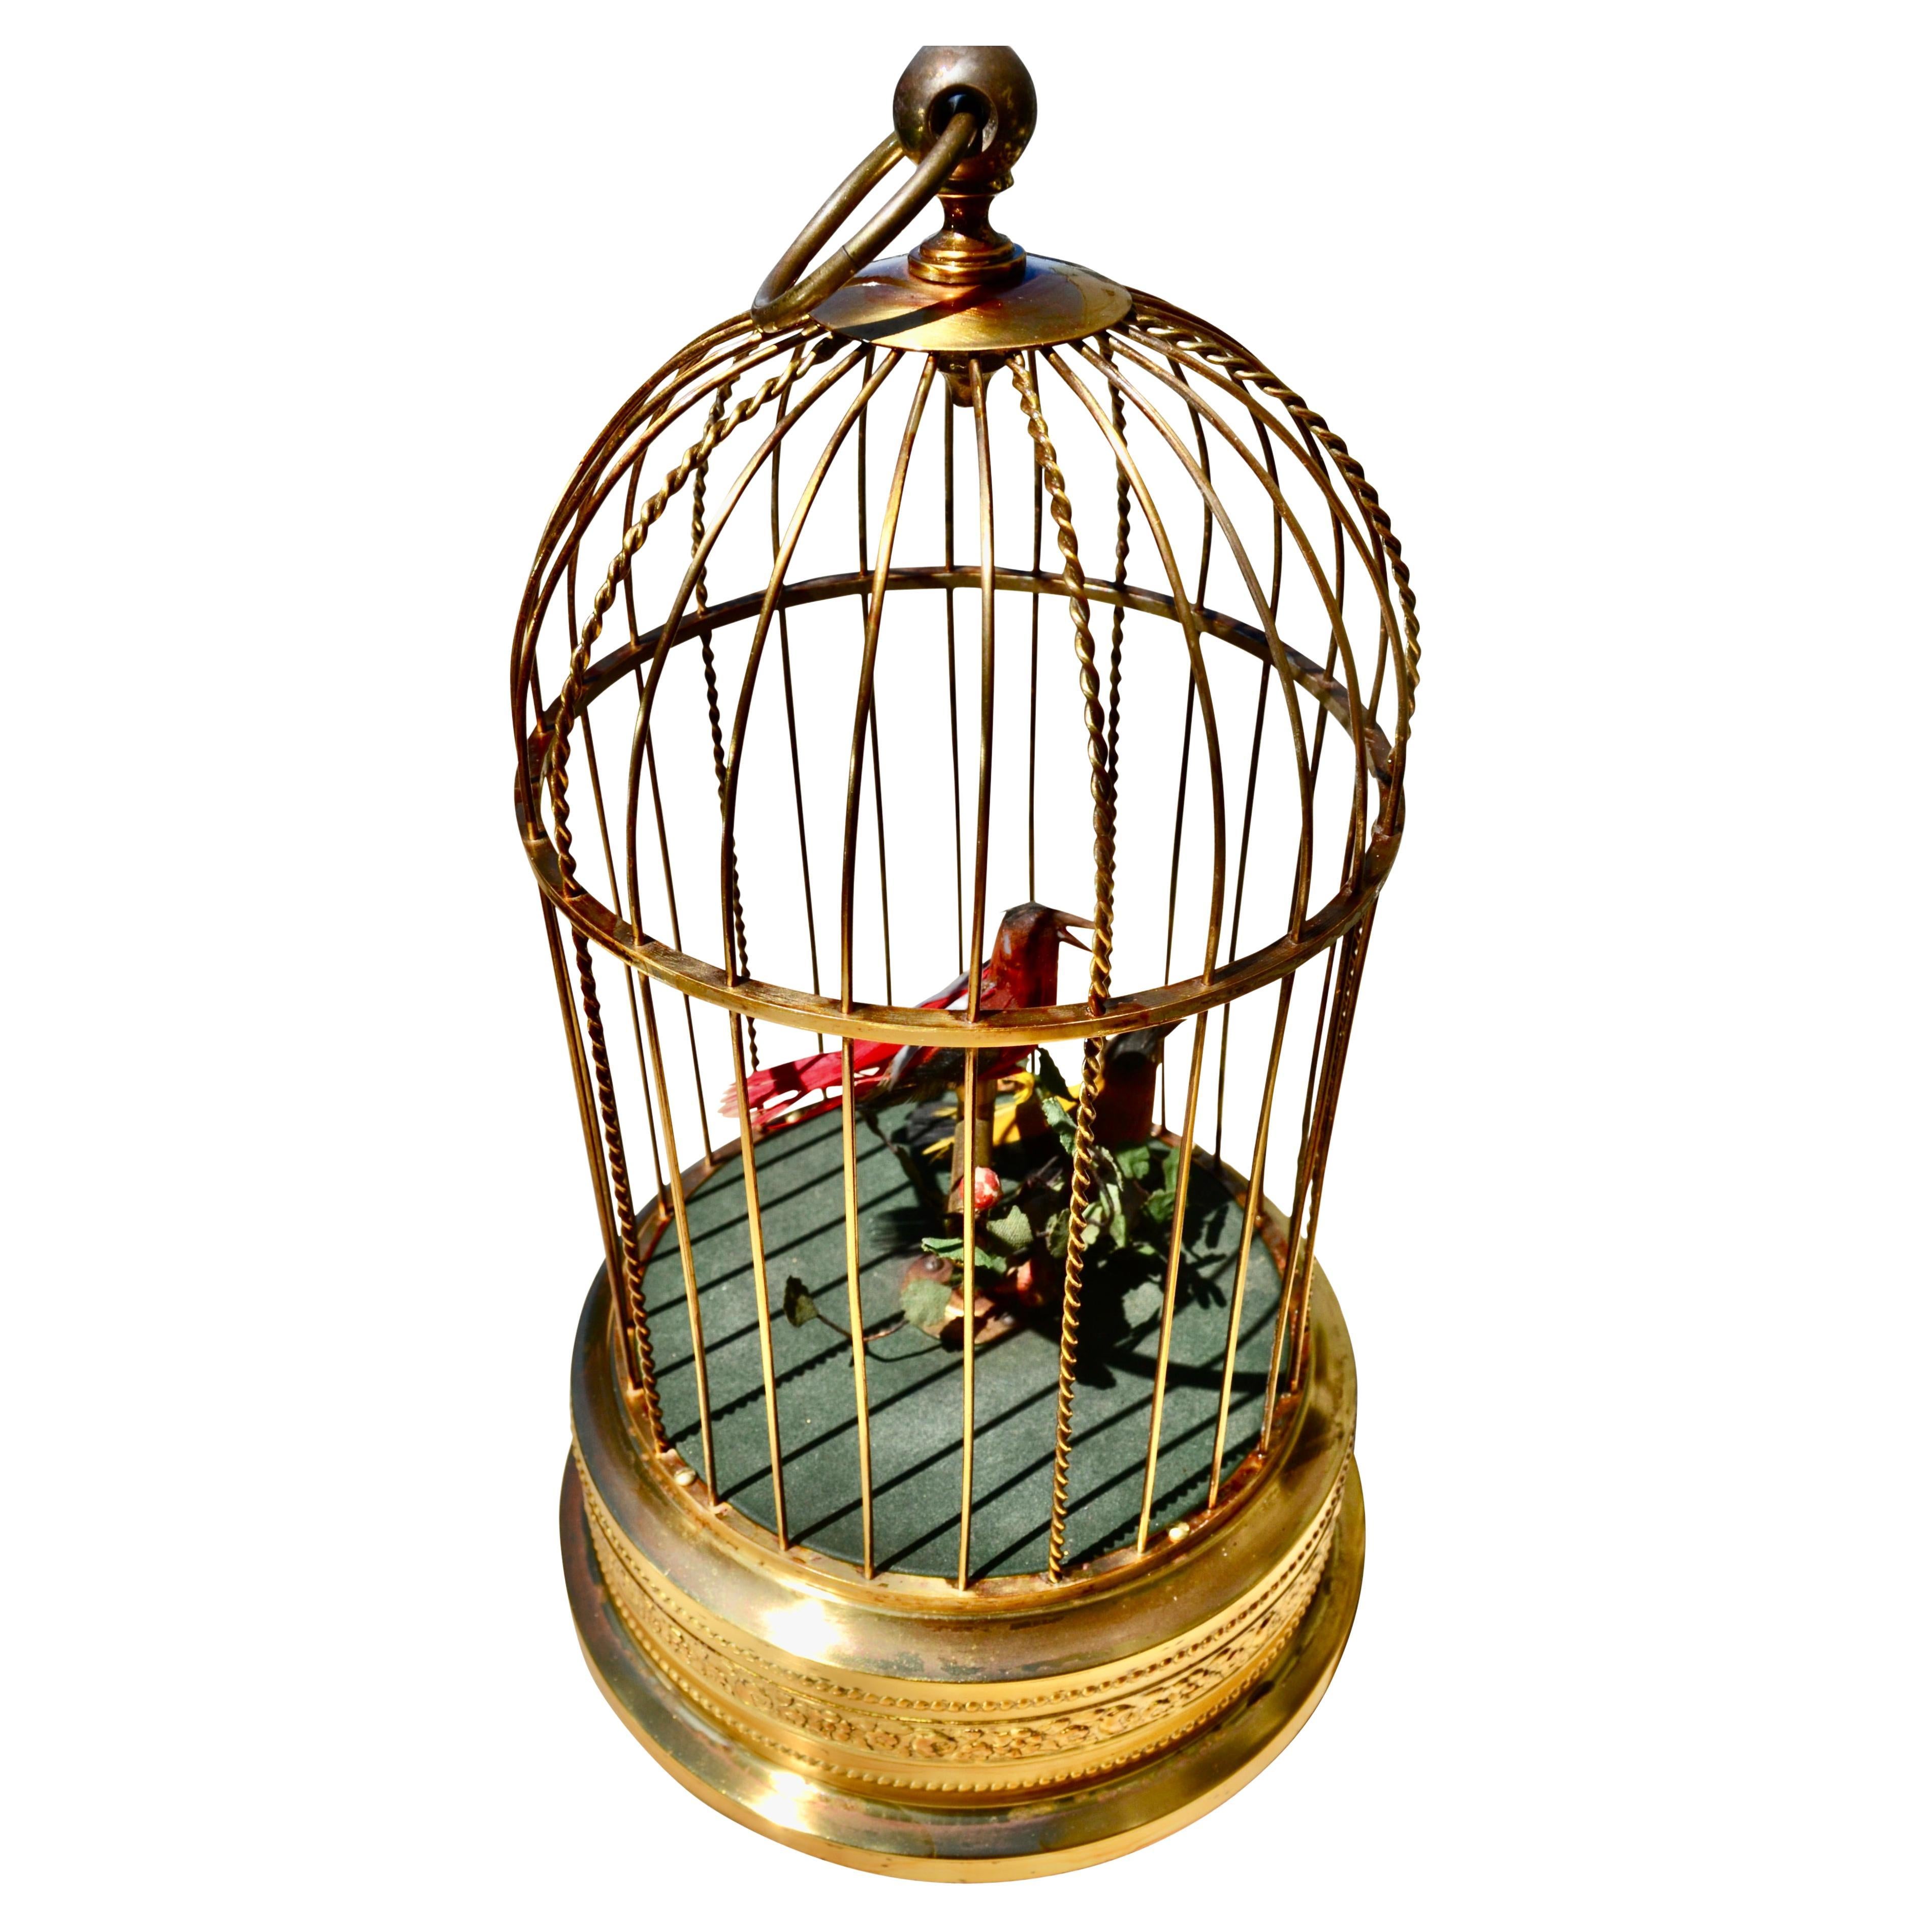 1960's German made Singing Bird Cage